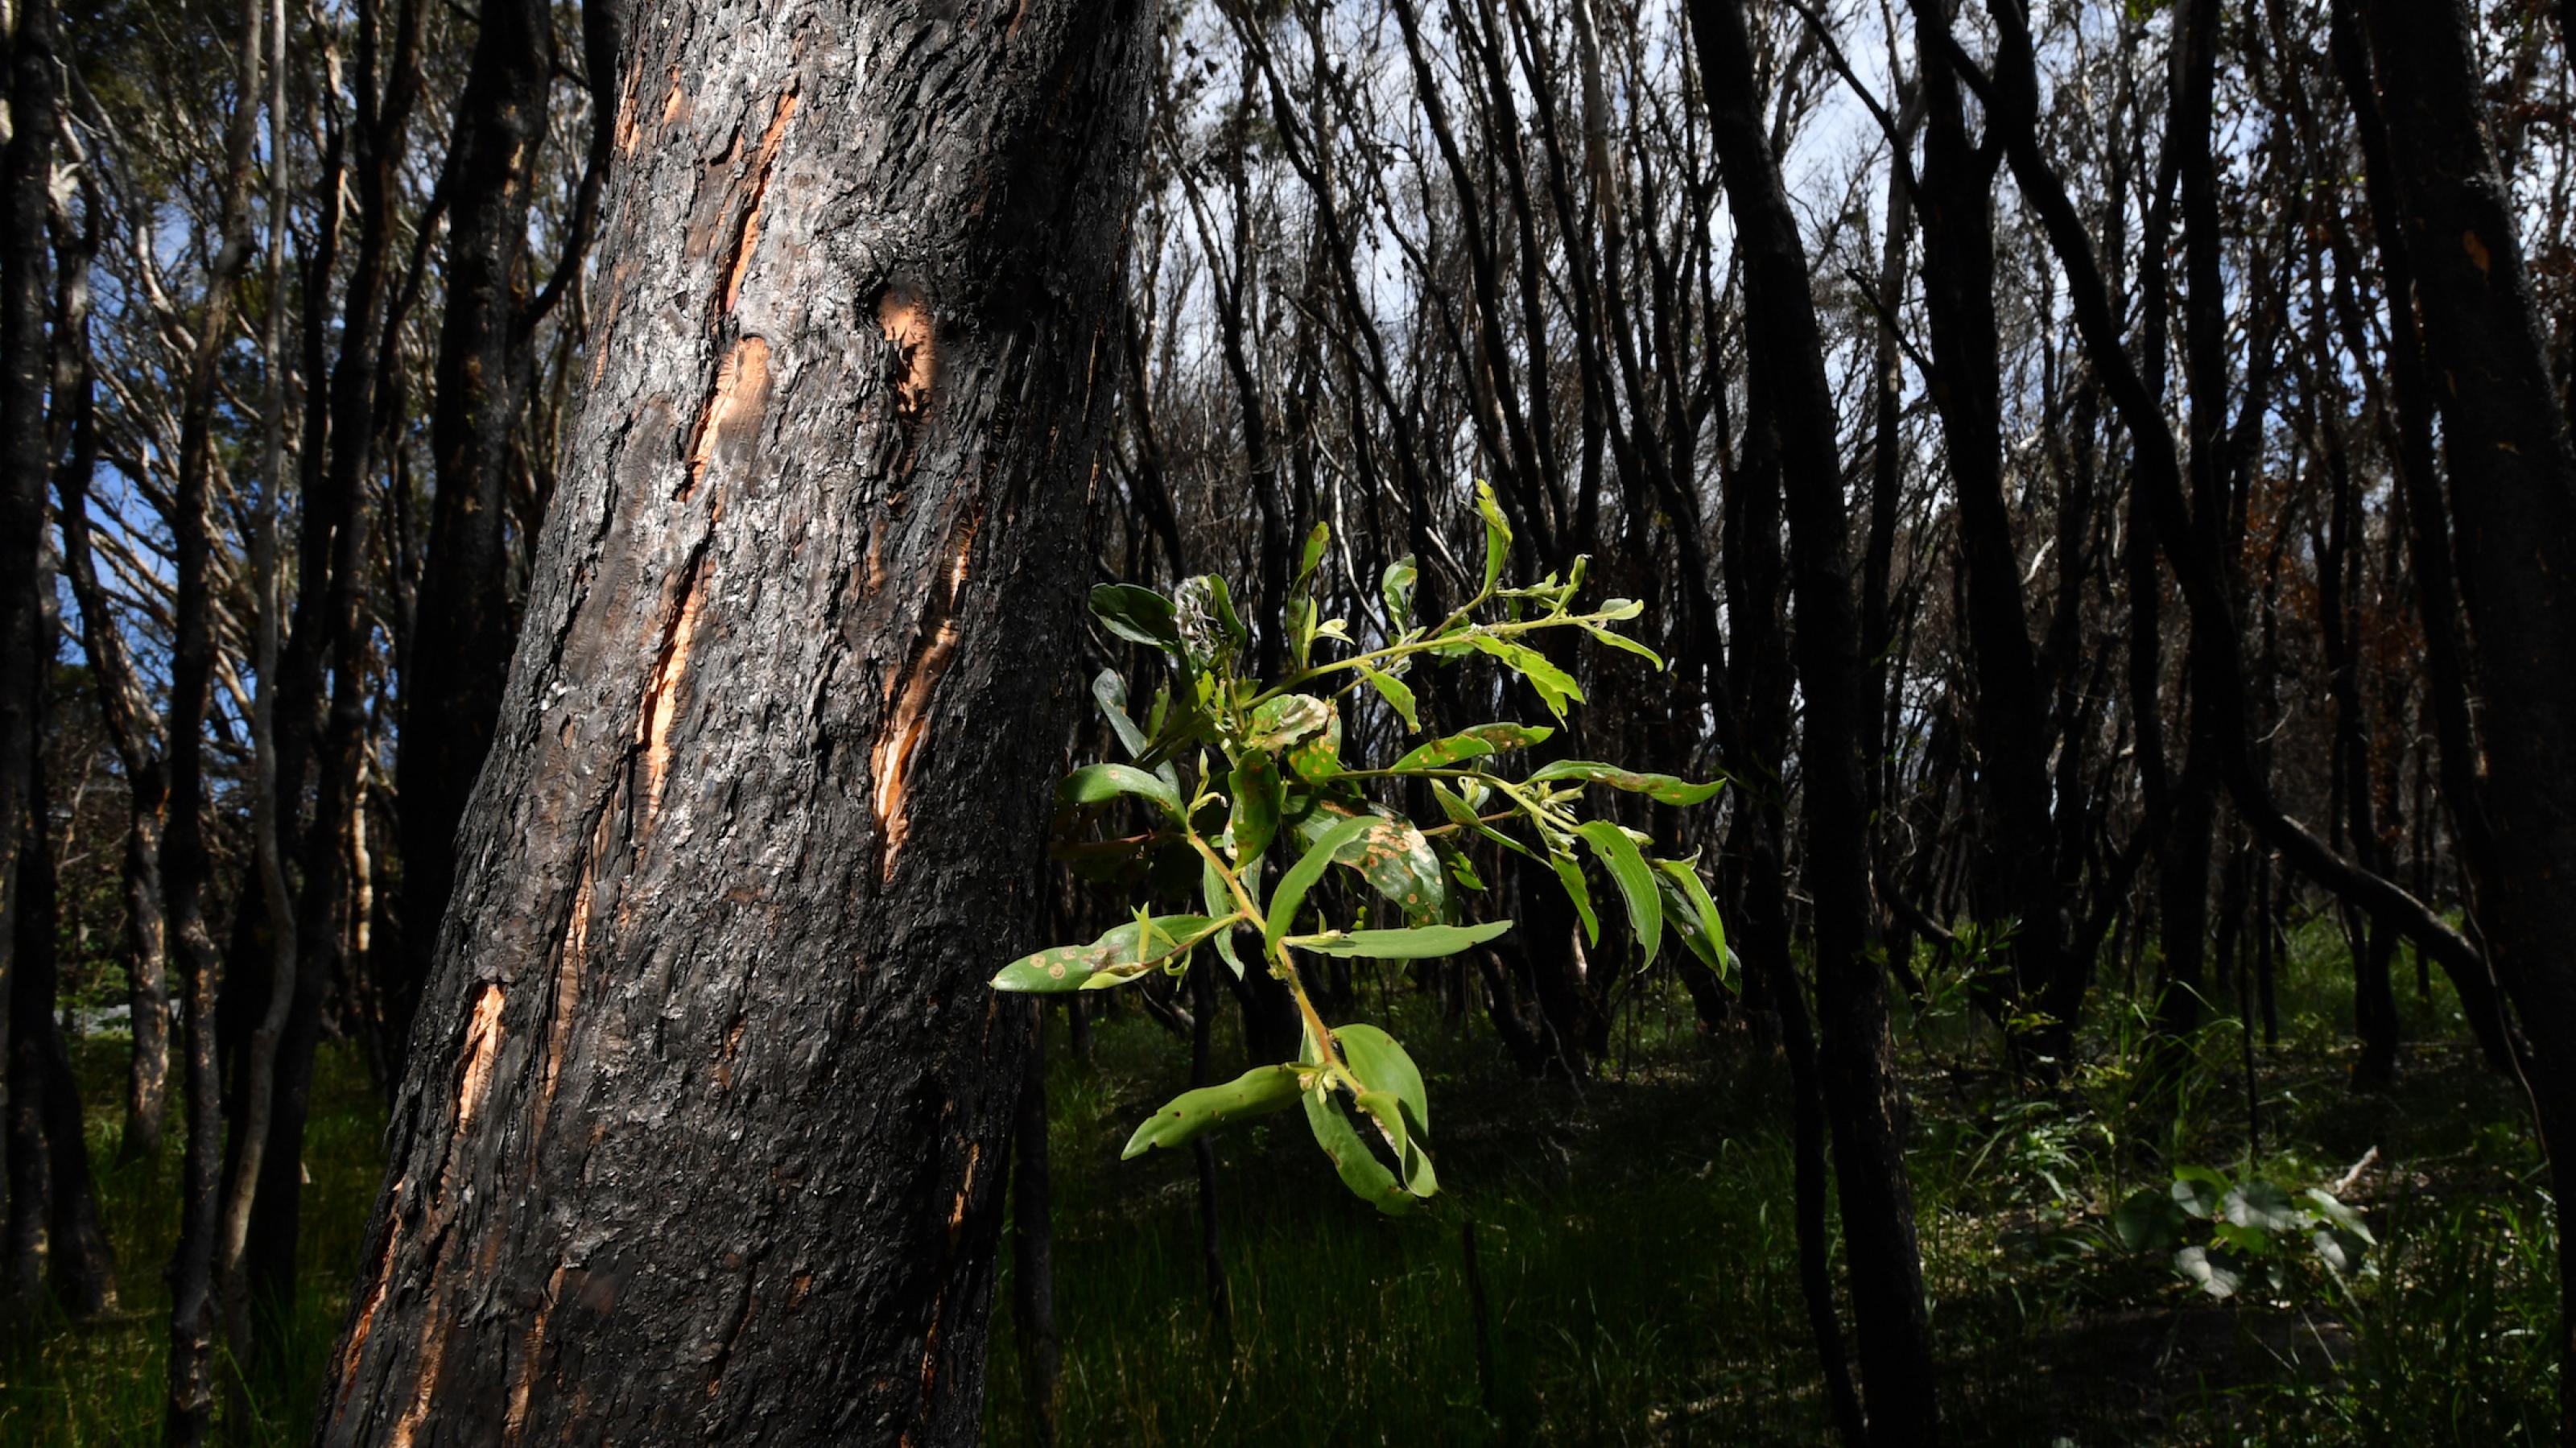 Das Bild zeigt einen vom Feuer komplett verkohlten Wald. Aber aus einem Baum wächst ein kleiner grüner Zweig heraus, wie ein Zeichen der Hoffnung.